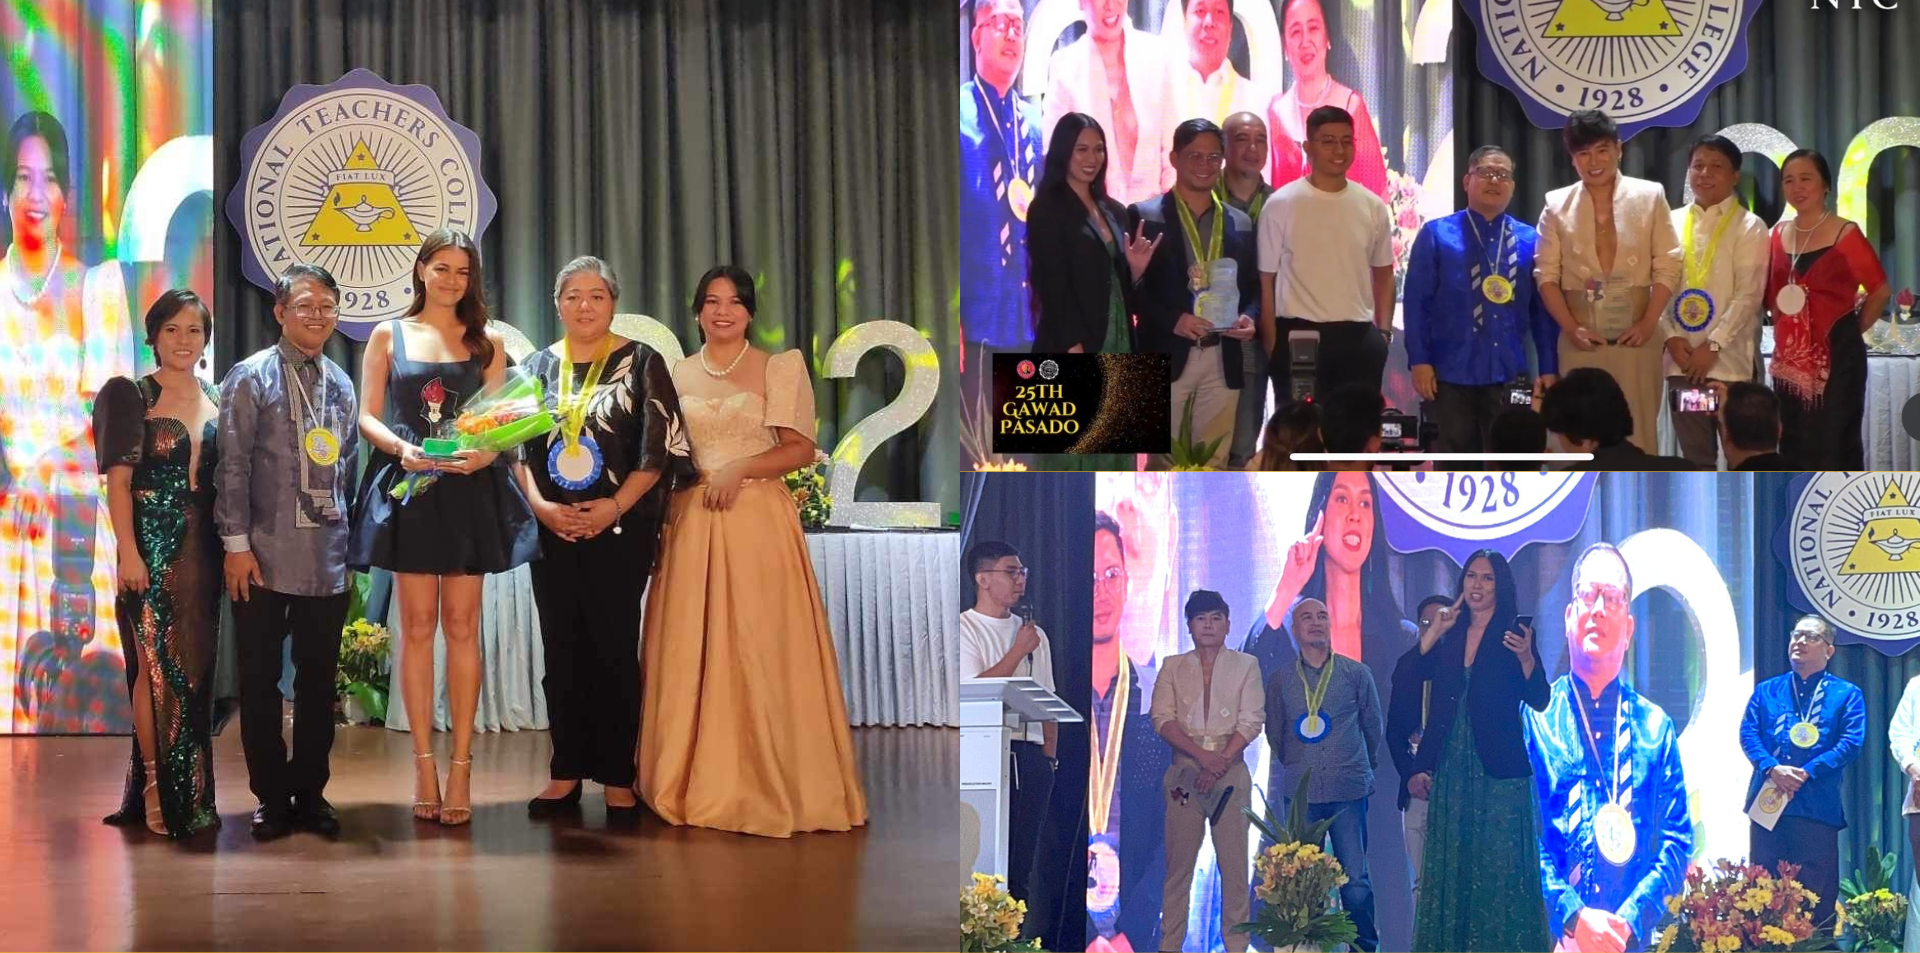 Bakit Di Mo Sabihin Wins Prestigious Awards at the 25th Gawad PASADO